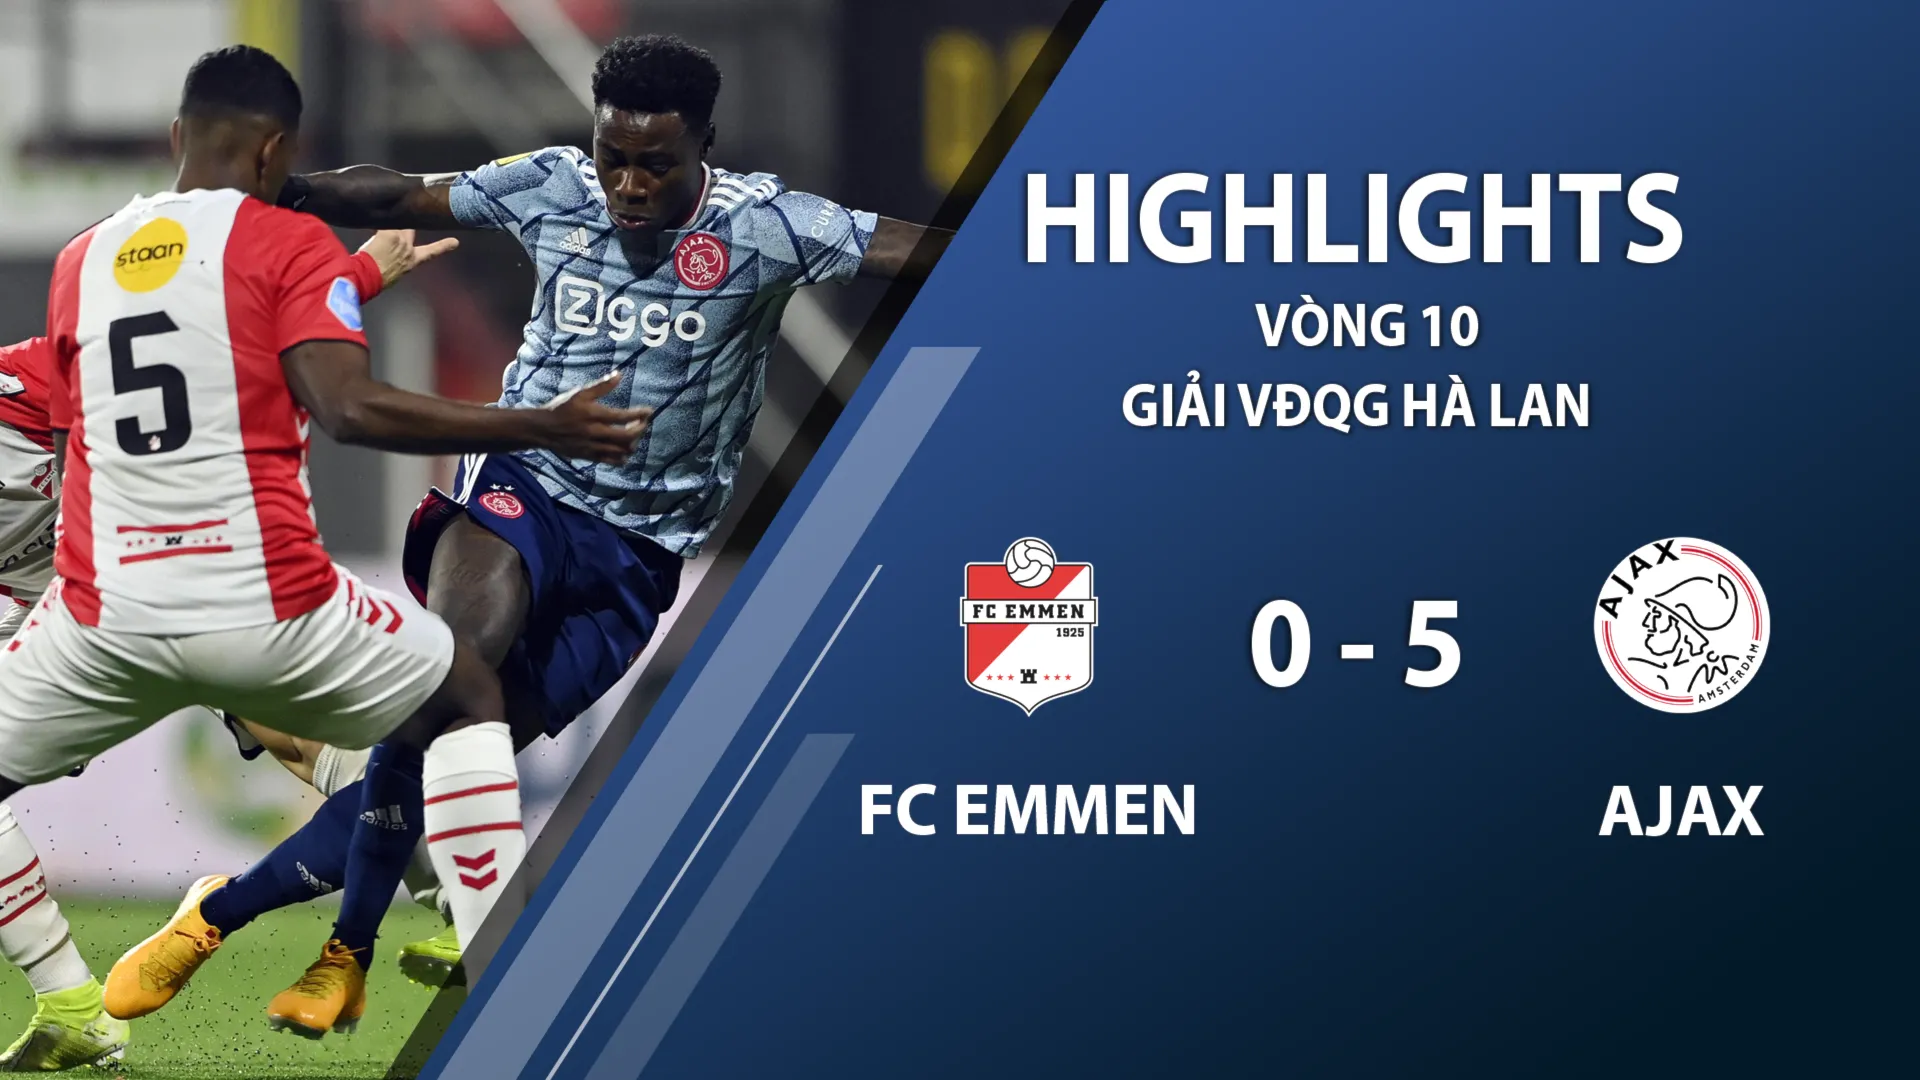 Highlights FC Emmen 0-5 Ajax (vòng 10 giải VĐQG Hà Lan 2020/21)